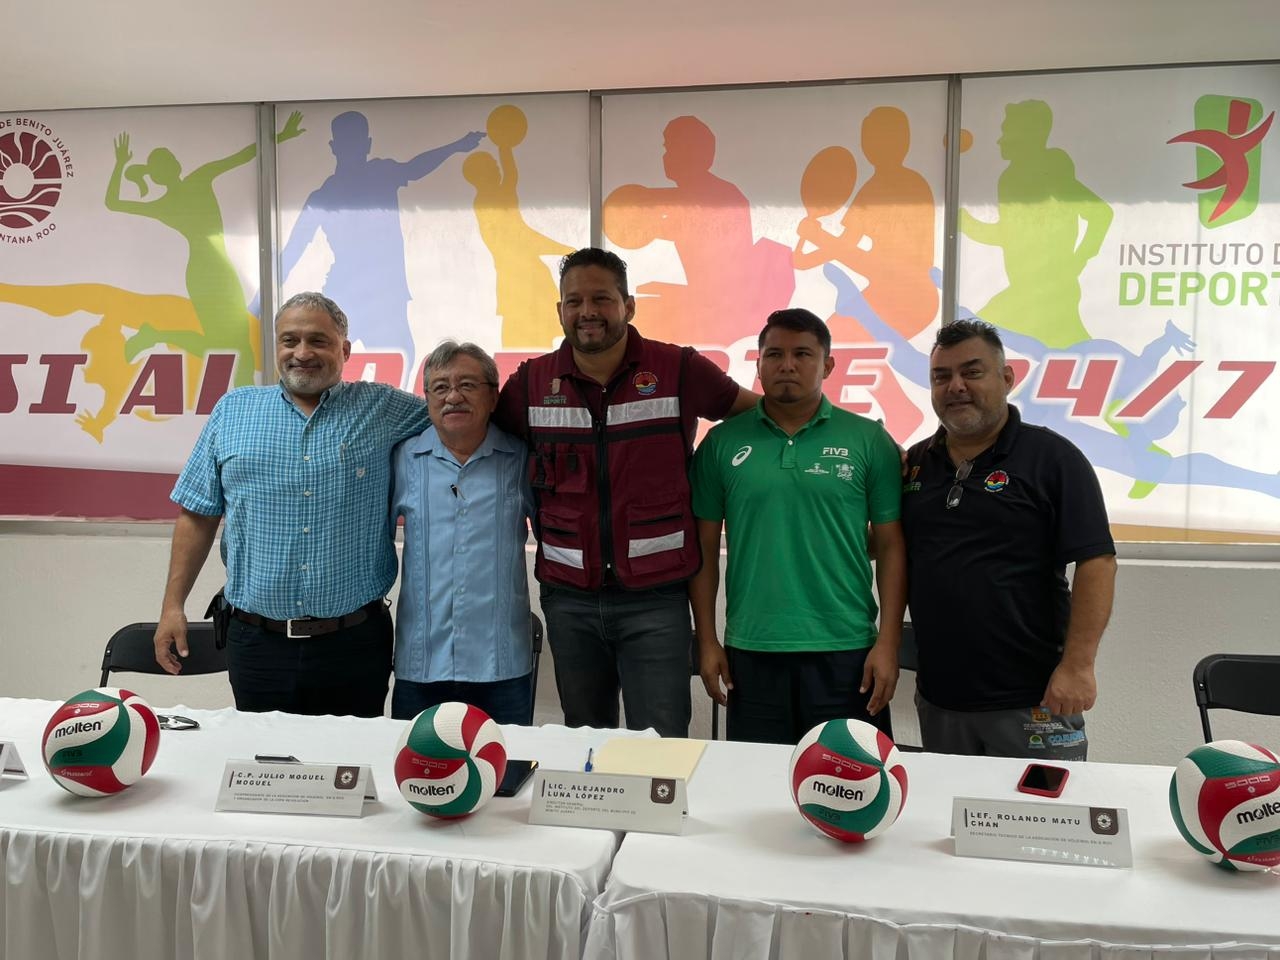 En el evento participará la Selección de Belice, Tabasco, Campeche, Yucatán y Quintana Roo

